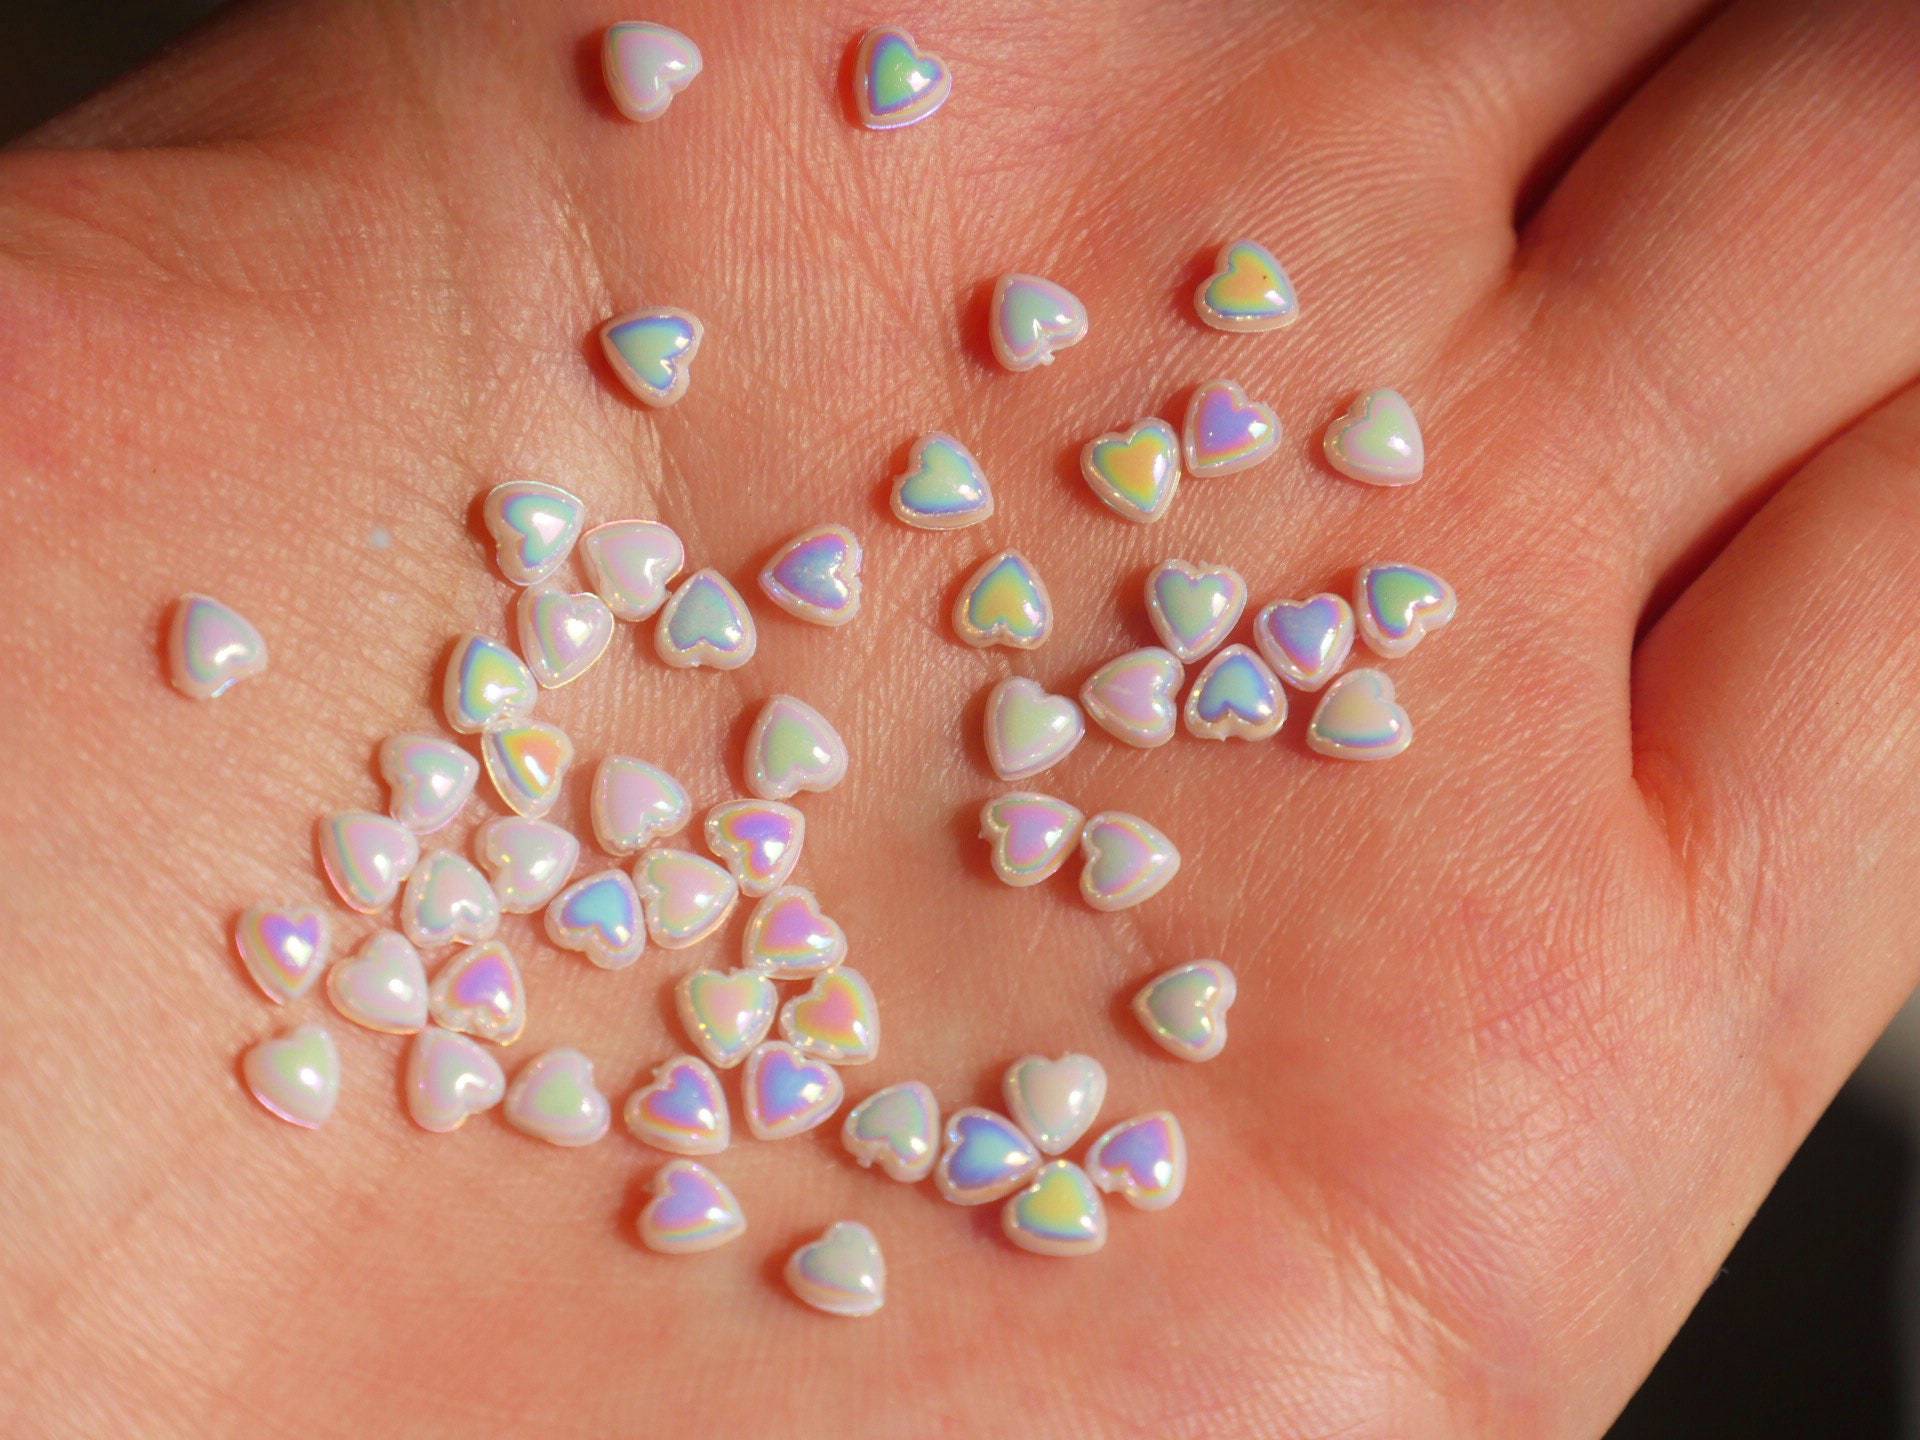 15 Stück Irisierende Perlmuttfarbene Perlglanz-Weiße Herzförmige Nagel-Charms-Nägel Kunst-Abziehbild / von Makynail